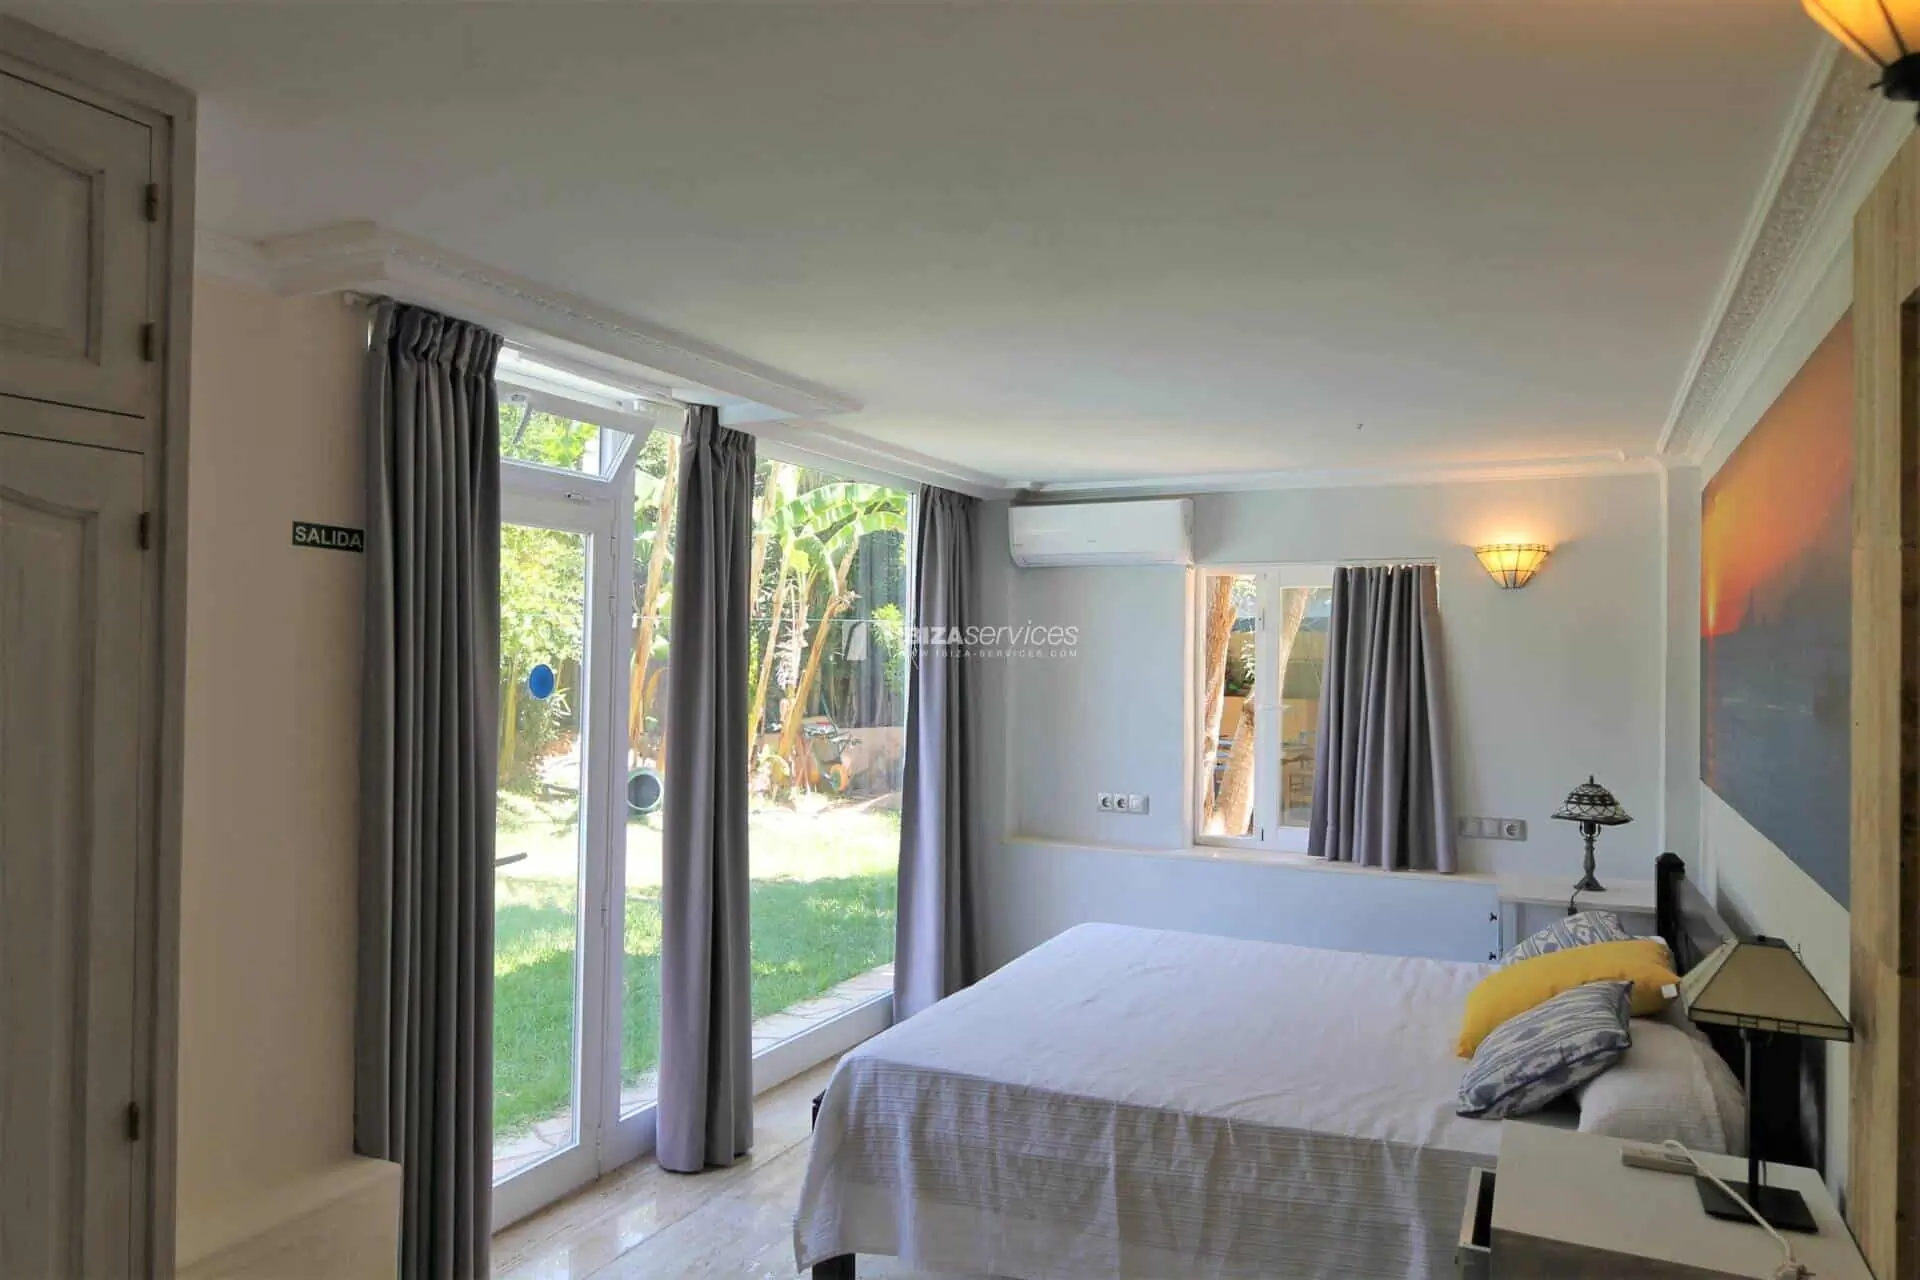 Villa mit 6 Schlafzimmern in der Nähe von Ibiza-Stadt